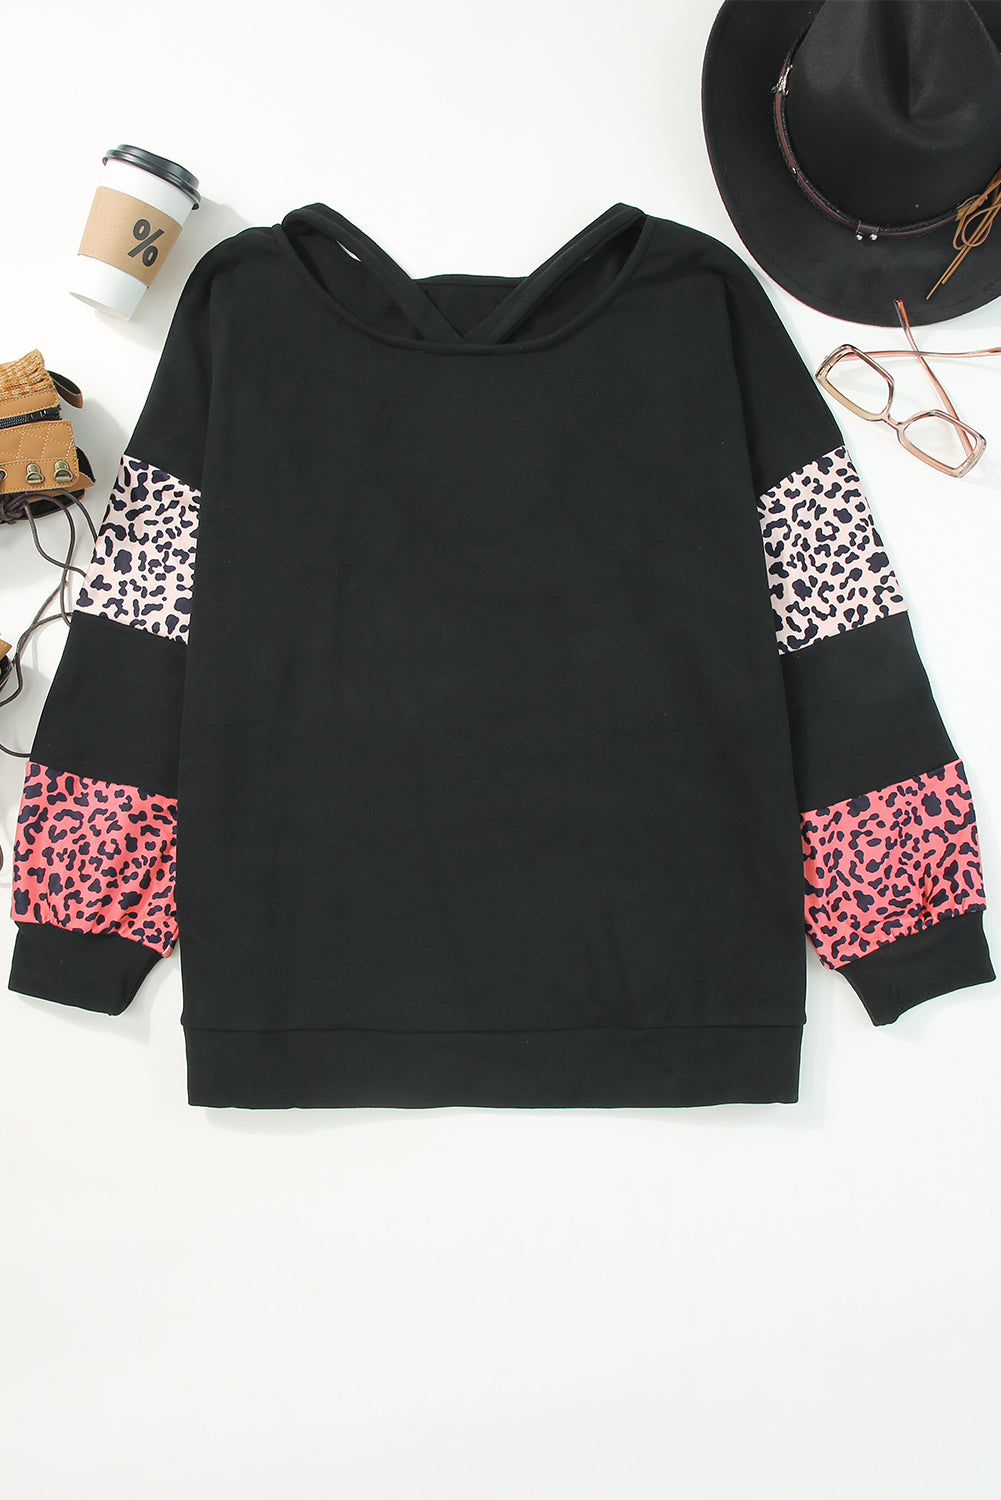 Crna majica s ovratnikom s remenčićima i patchworkom u obliku leoparda